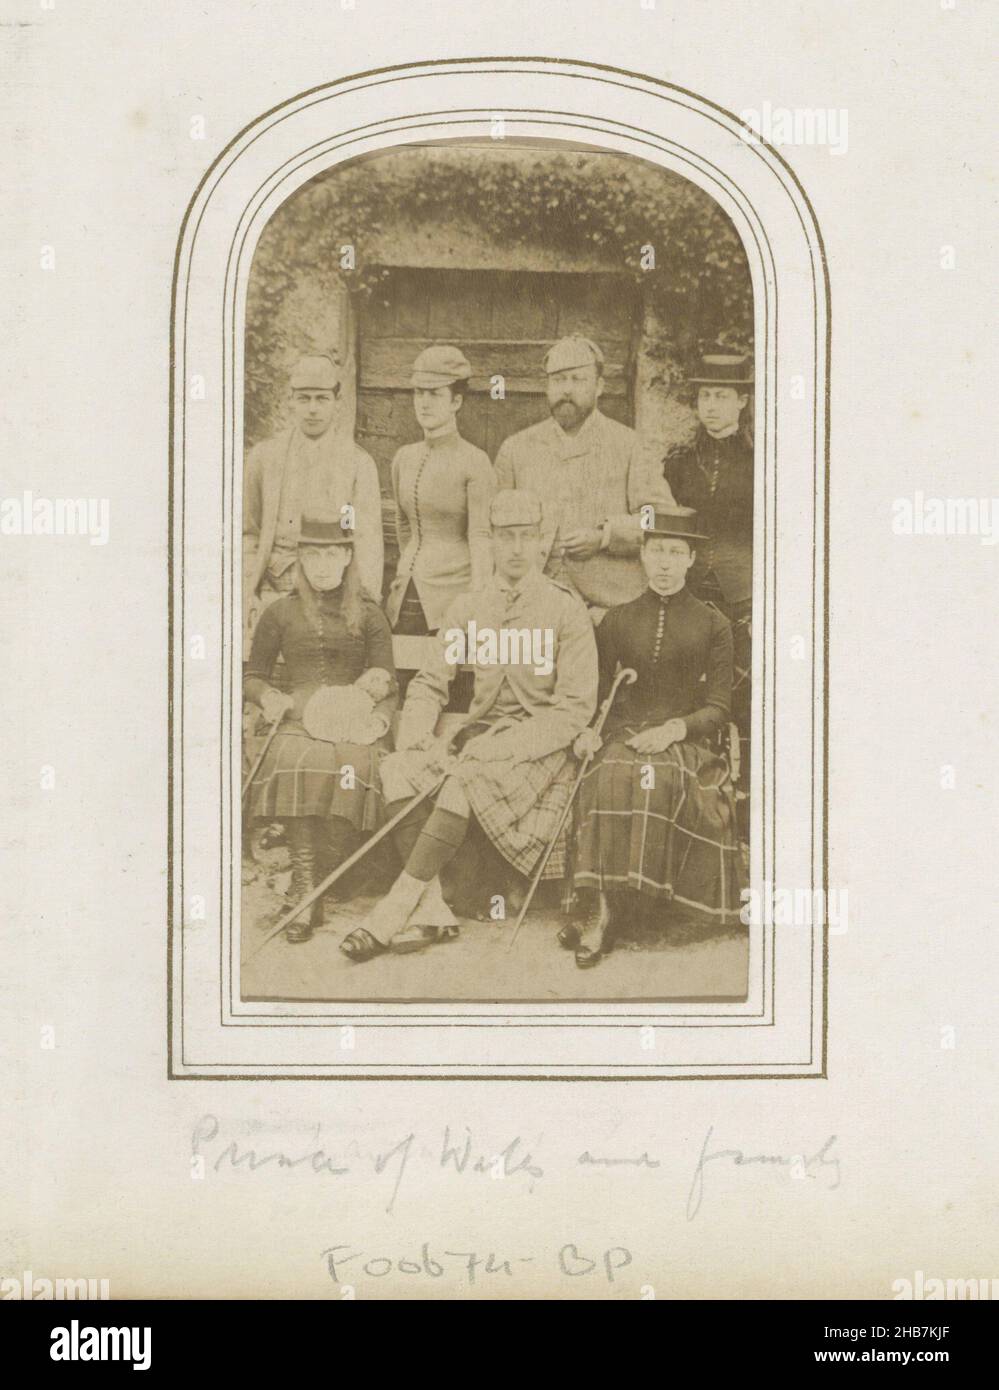 Ritratto di gruppo del re d'Inghilterra Edoardo VII e della sua famiglia in  kilt, T.R.H. Il Principe di Galles e la Famiglia (titolo sull'oggetto),  parte di Album fotografico contenente 123 cartes-de-visit di